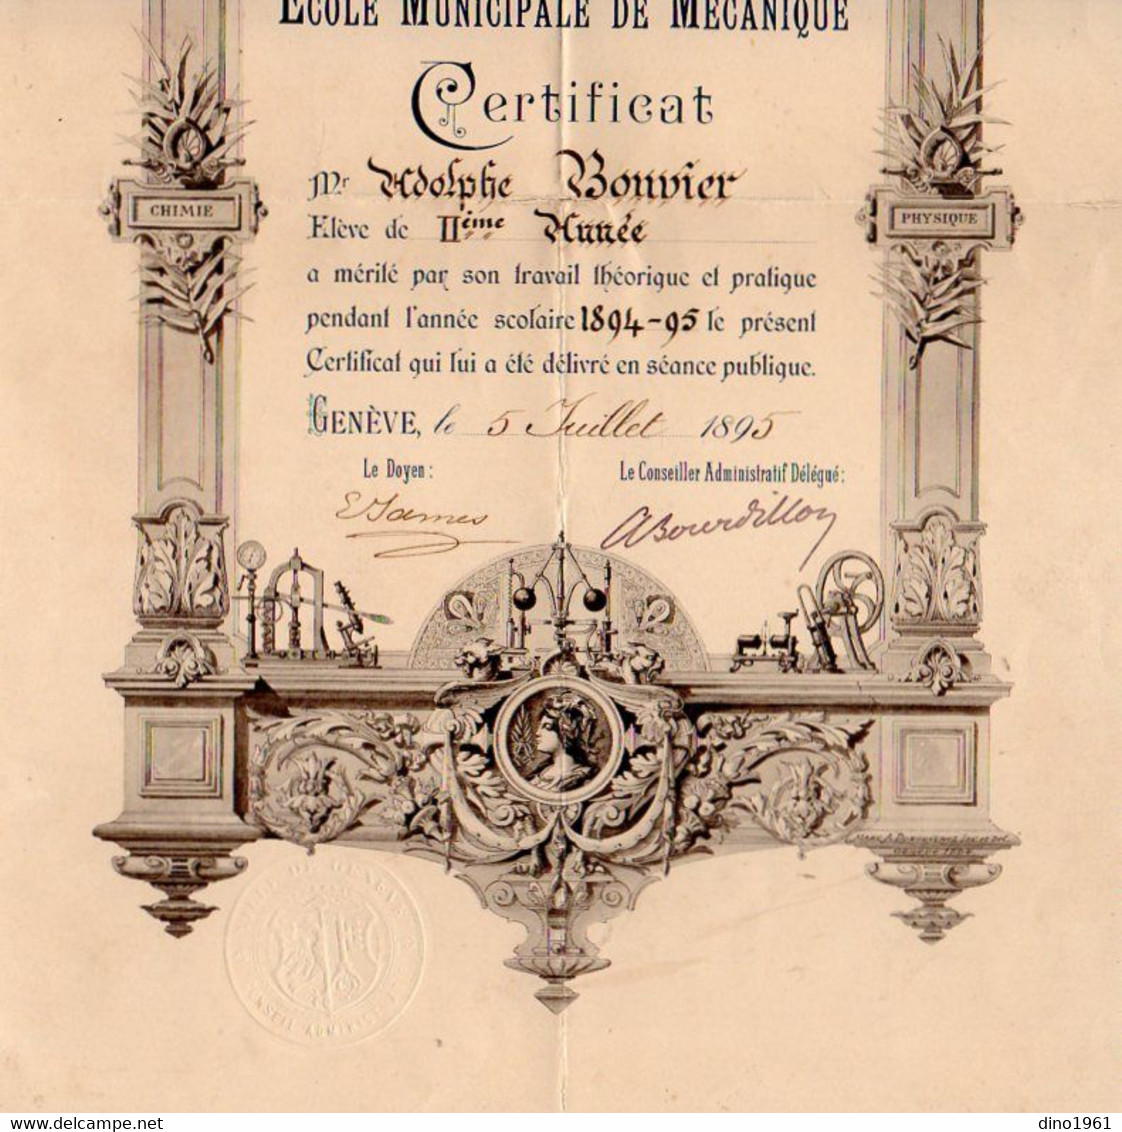 VP18.222 - Suisse - Ville De GENEVE 1895 - Ecole Municipale De Mécanique / Certificat ( Lampe ) - Mr Adolphe BONVIER - Diplome Und Schulzeugnisse